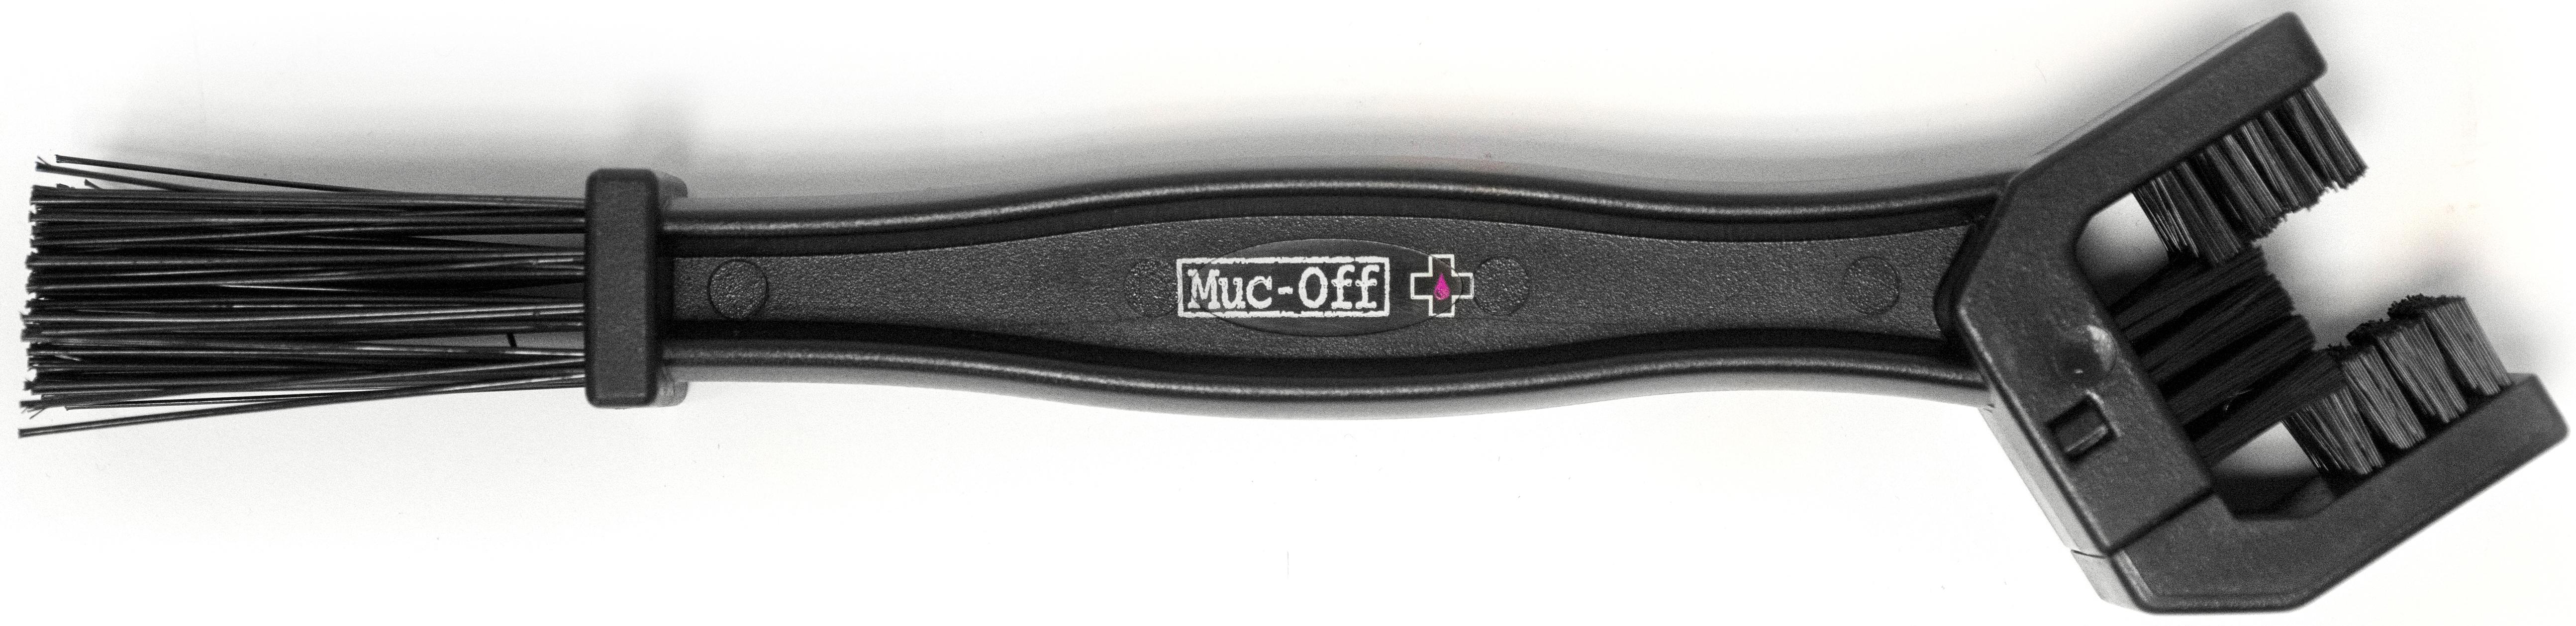 Muc-Off Chain Brush